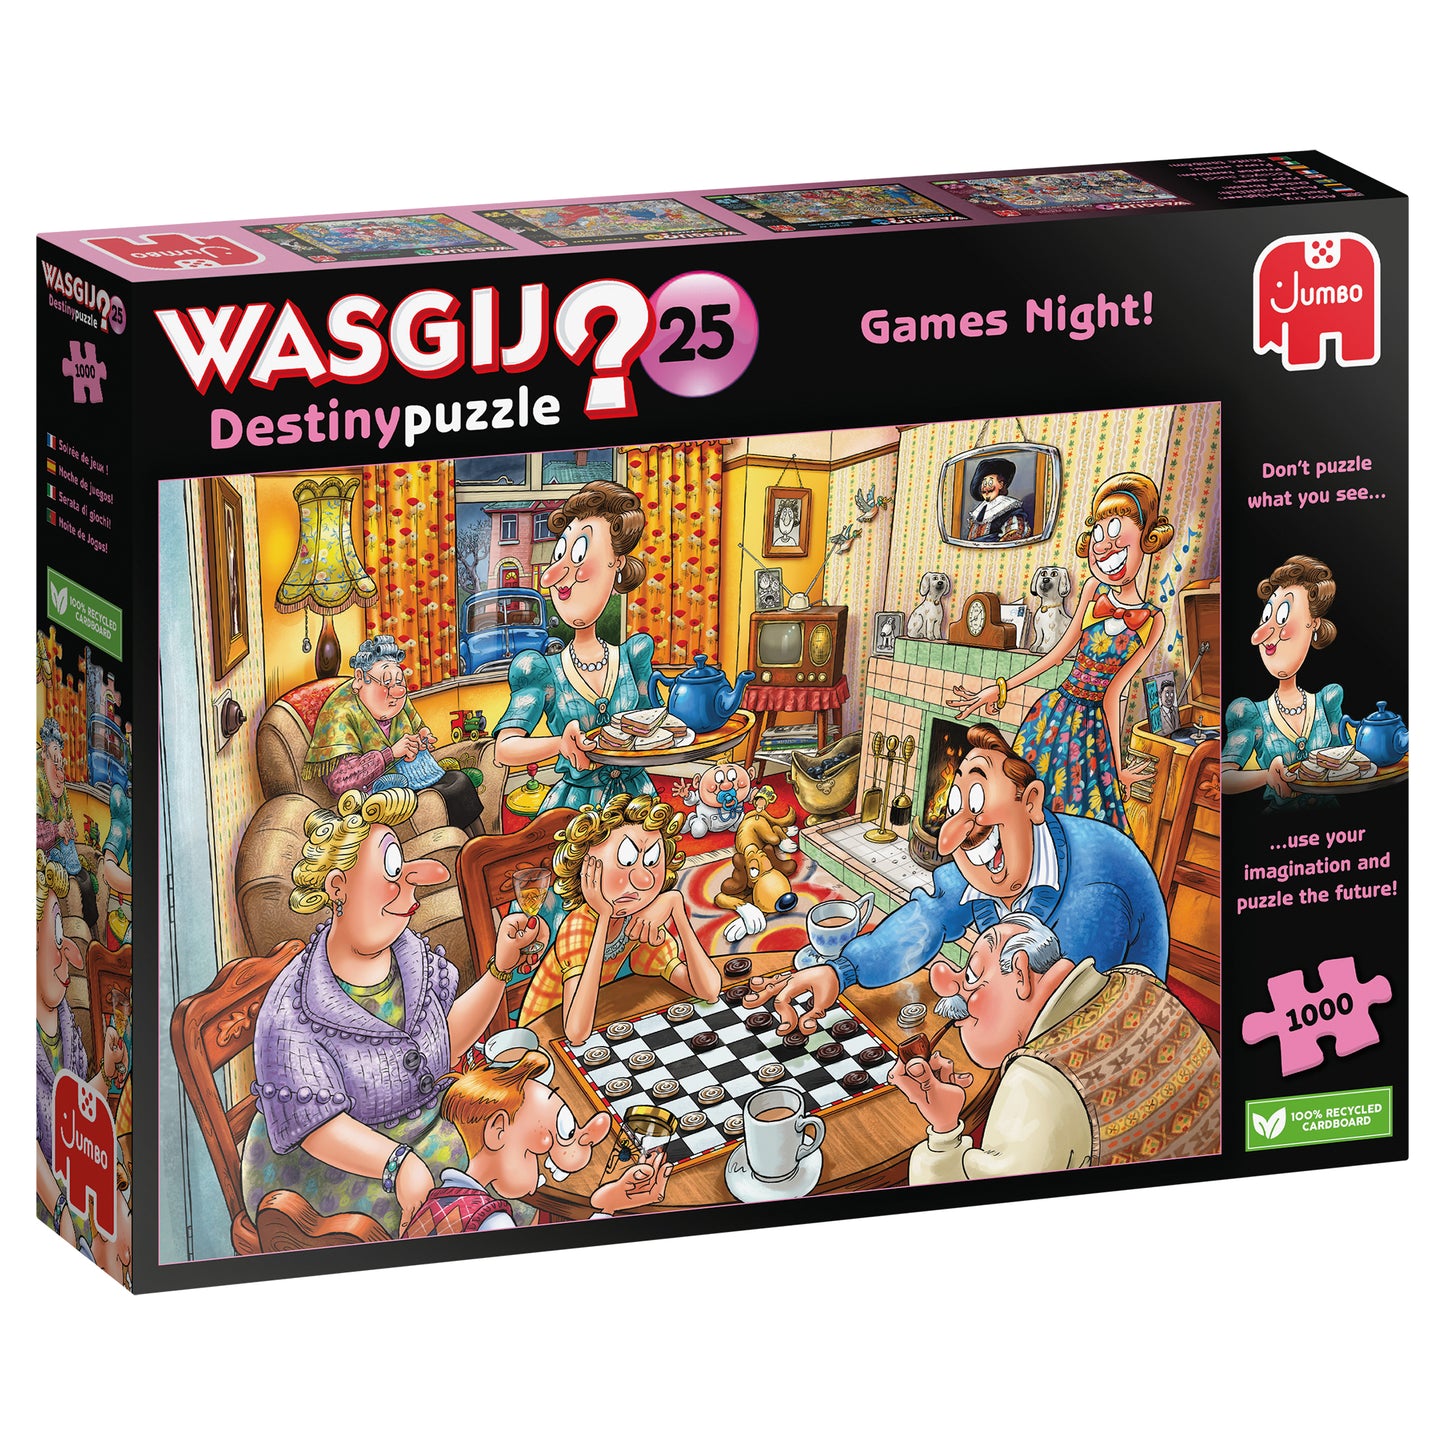 Wasgij Destiny 25 - Games Night! - 1000 Piece Jigsaw Puzzle